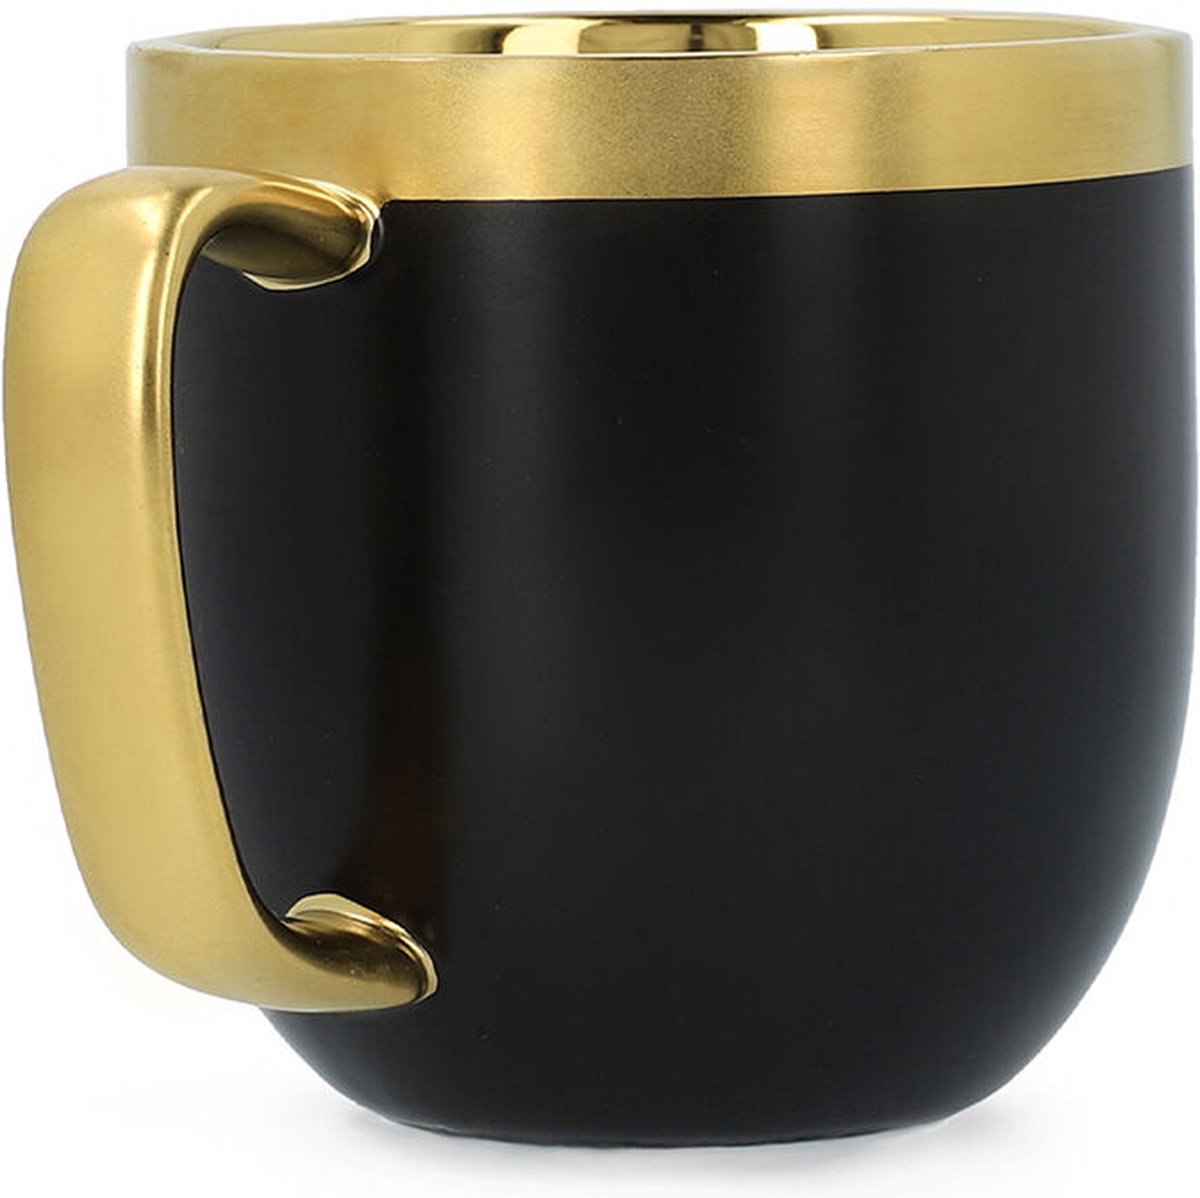 HOMLA Zintuiglijke Kop + Lepel met Gouden Decoratie - Mok Theekop Koffiemok 0,28 L Porselein Verguld Handgeschilderd Zwart & Goud